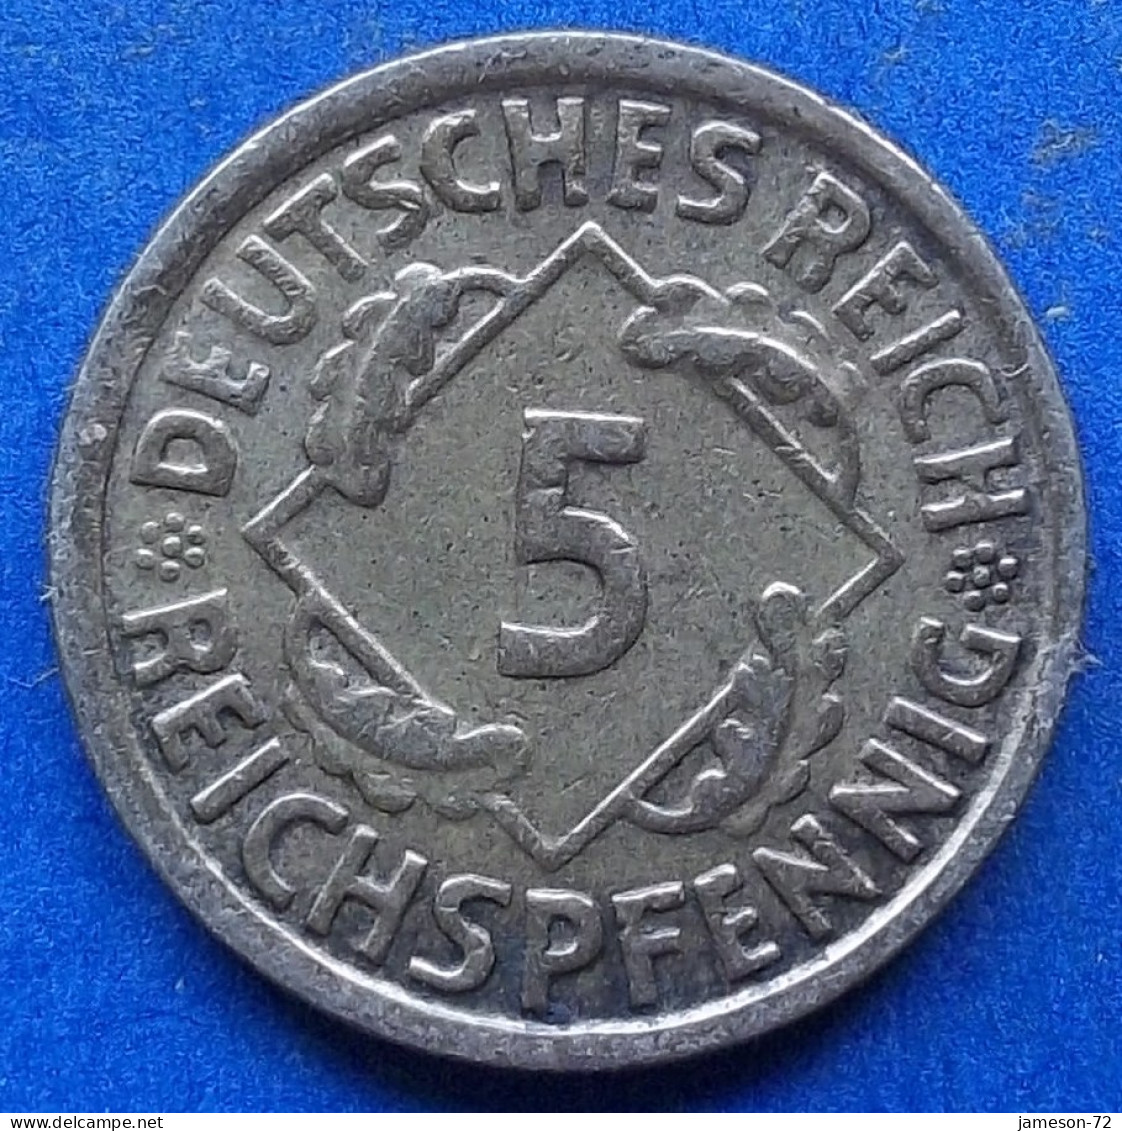 GERMANY - 5 Reichspfennig 1936 D KM# 39 Weimar Republic Reichsmark Coinage (1924-1938) - Edelweiss Coins - 5 Rentenpfennig & 5 Reichspfennig